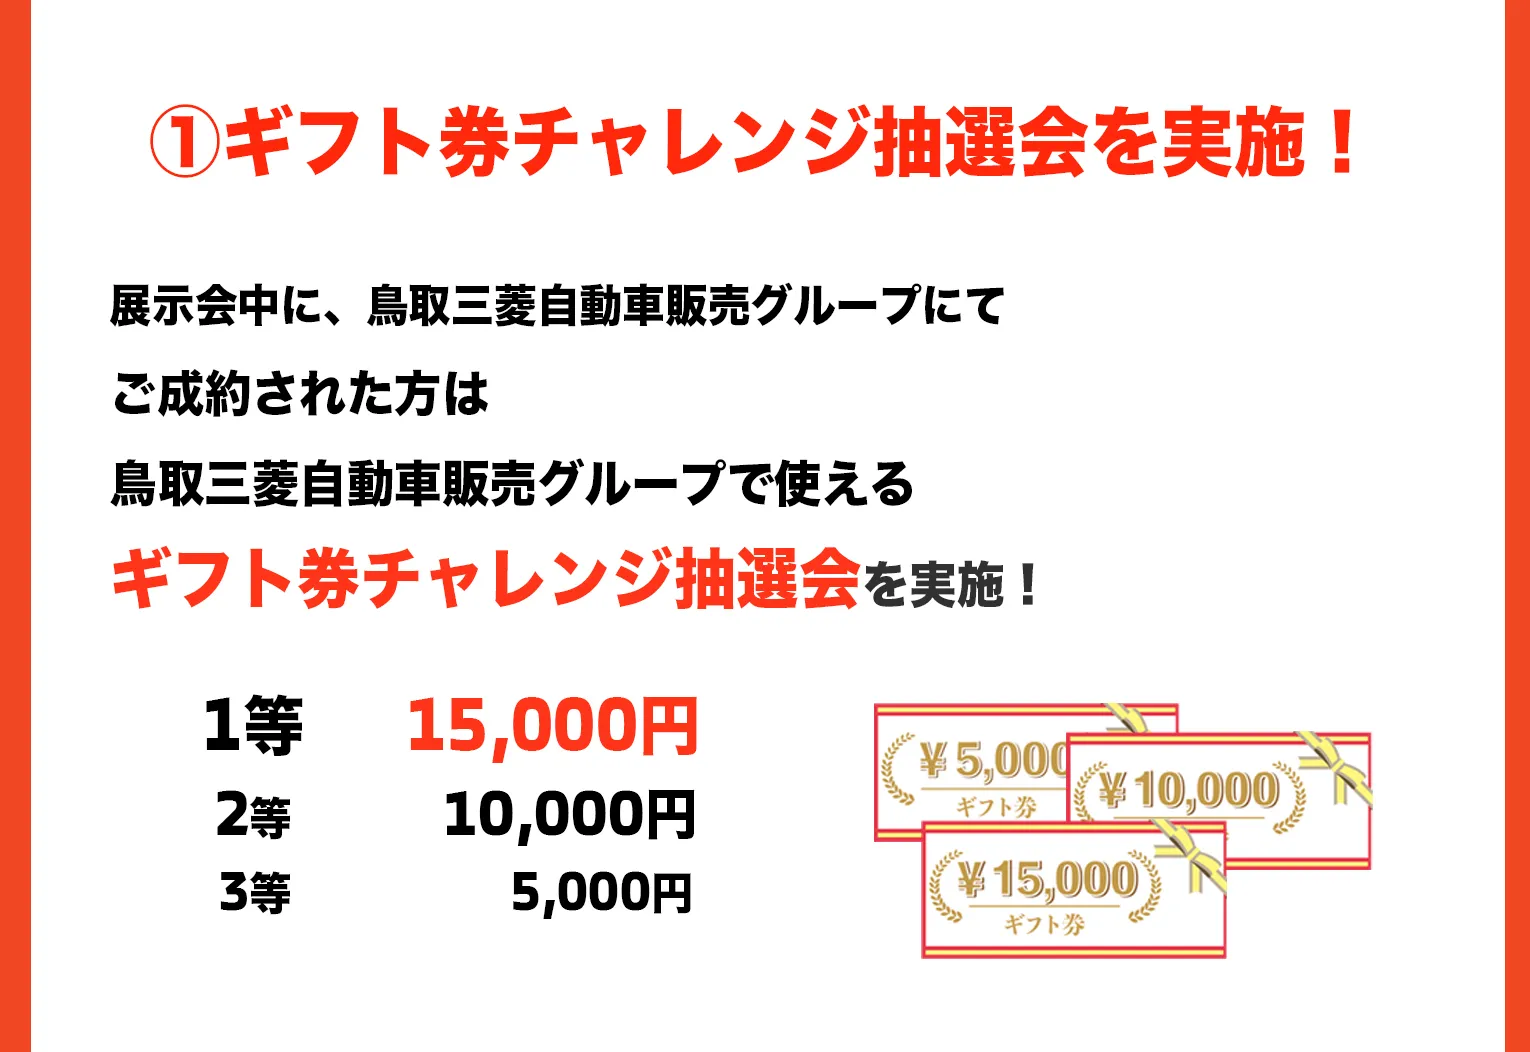 展示会中に、鳥取三菱自動車販売グループにてご成約された方は鳥取三菱自動車販売グループで使えるギフト券チャレンジ抽選会を実施！